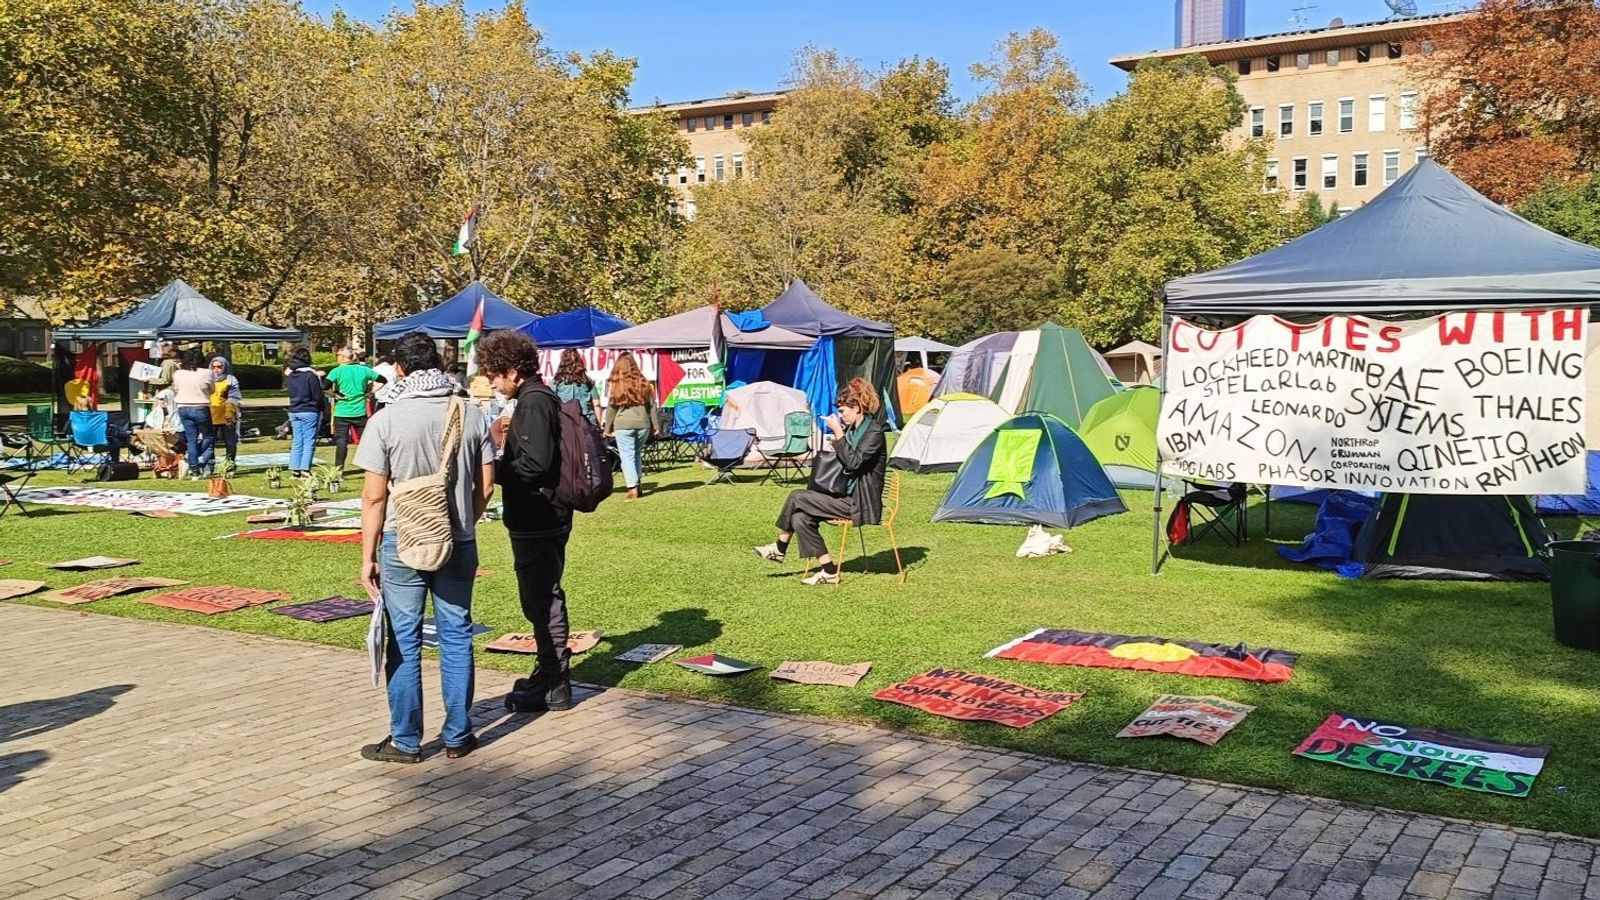 Studenten in Universitätslagern in Australien sprechen sich gegen Völkermord und Krieg im Gazastreifen aus